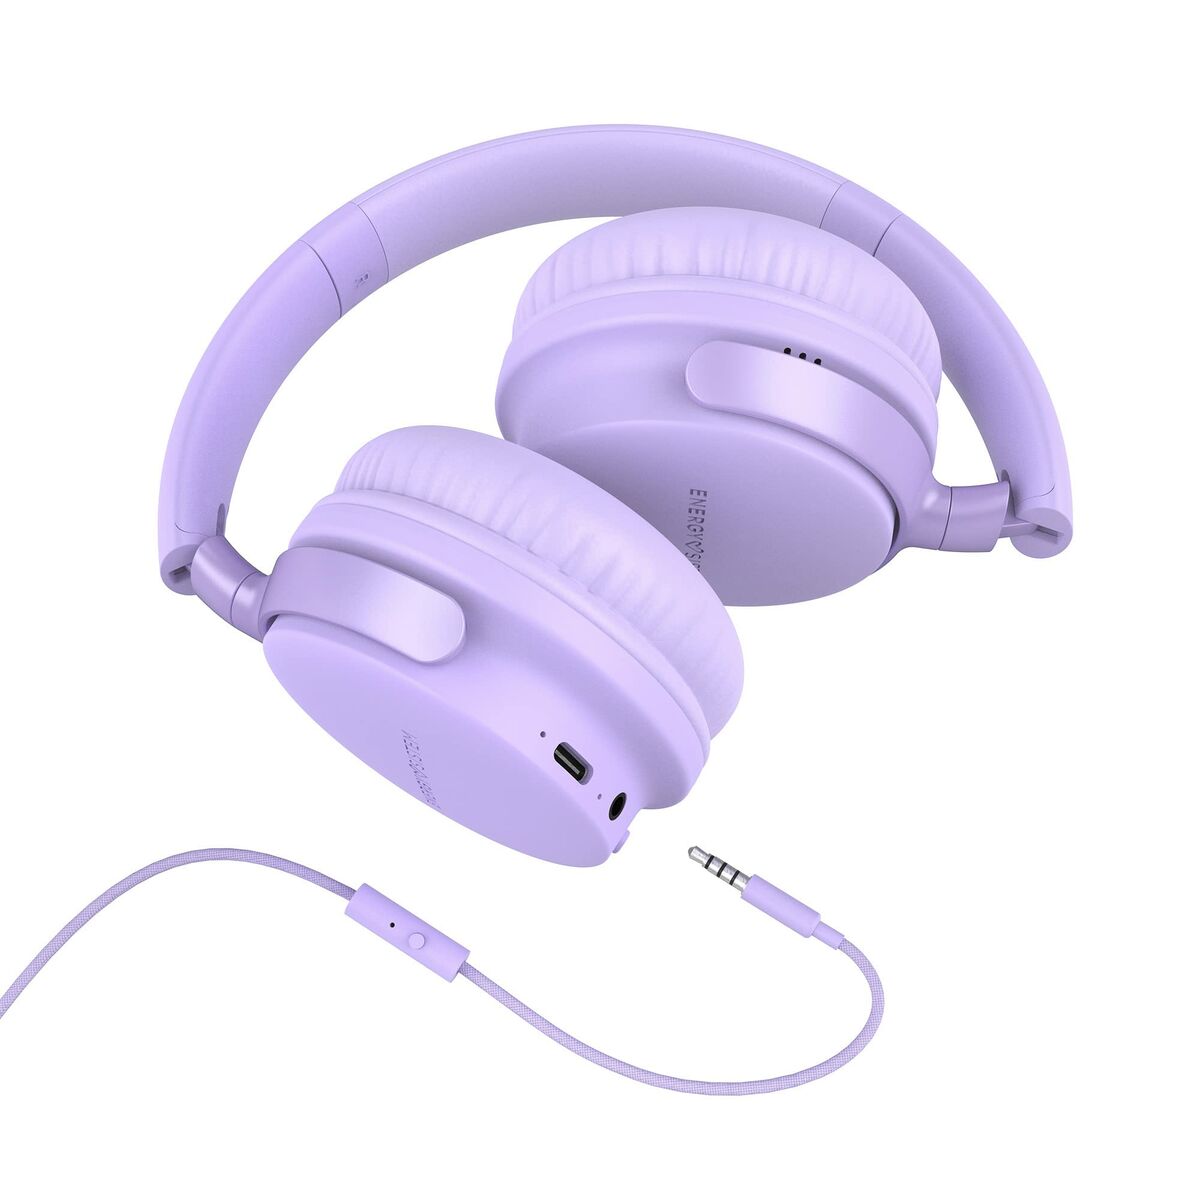 Bluetooth-Kopfhörer Energy Sistem 453054 Lavendel